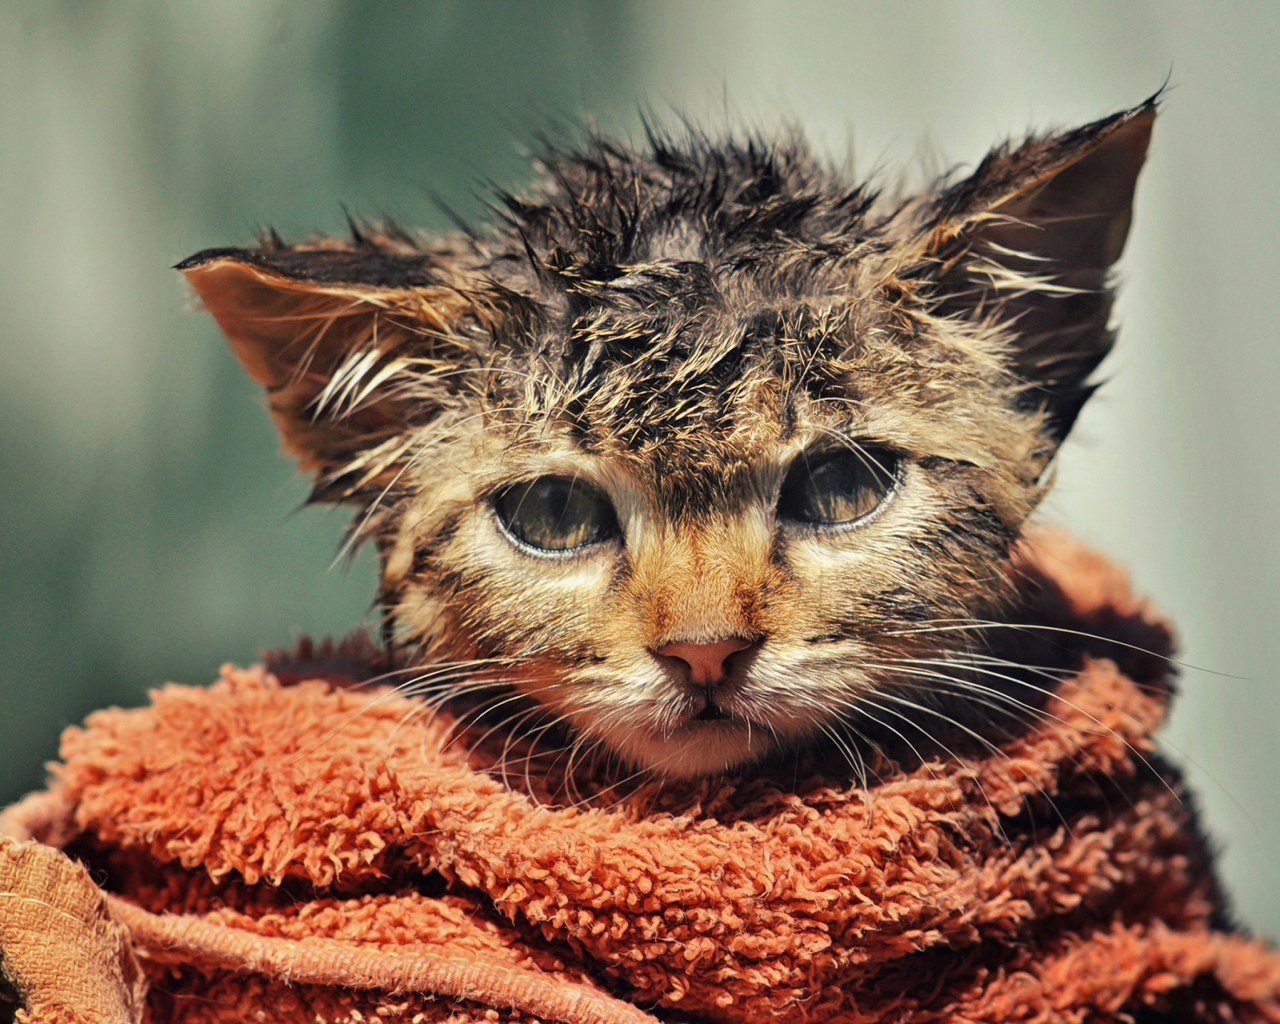 Cute Wet Kitty Cat After Having Shower wallpaper 1280x1024